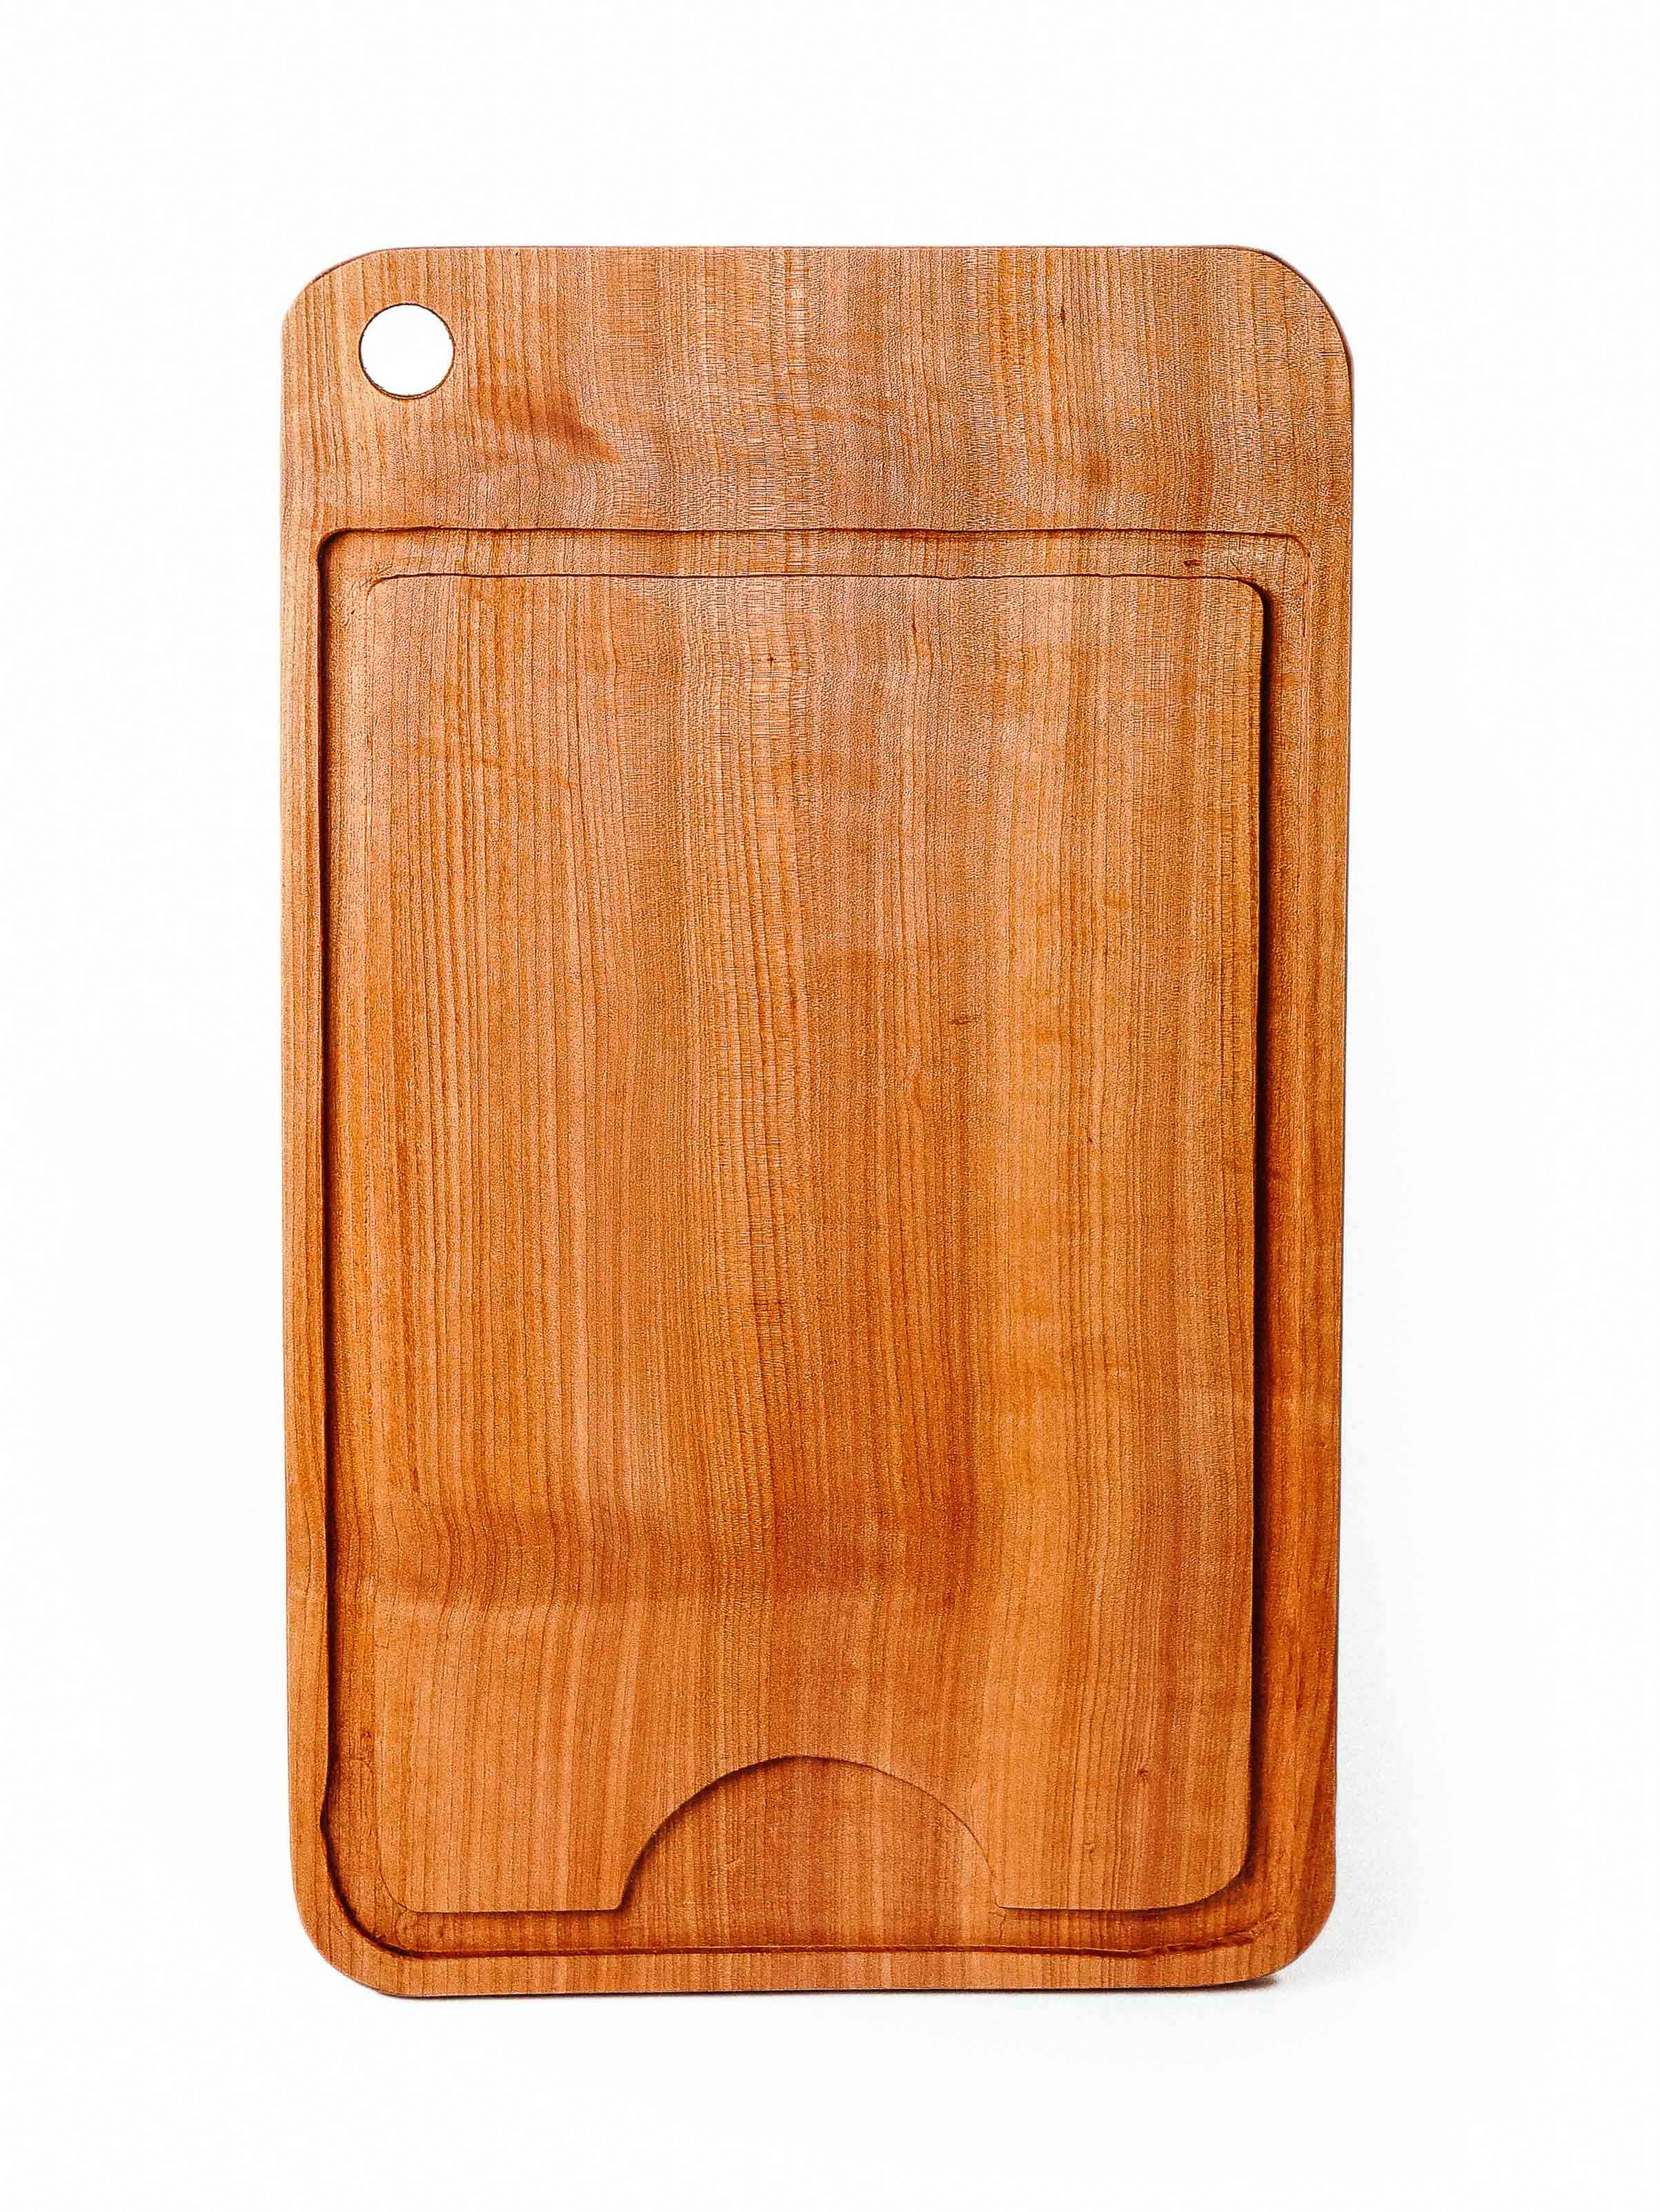 Tabla madera asado (50x30 cm), MILENARIA